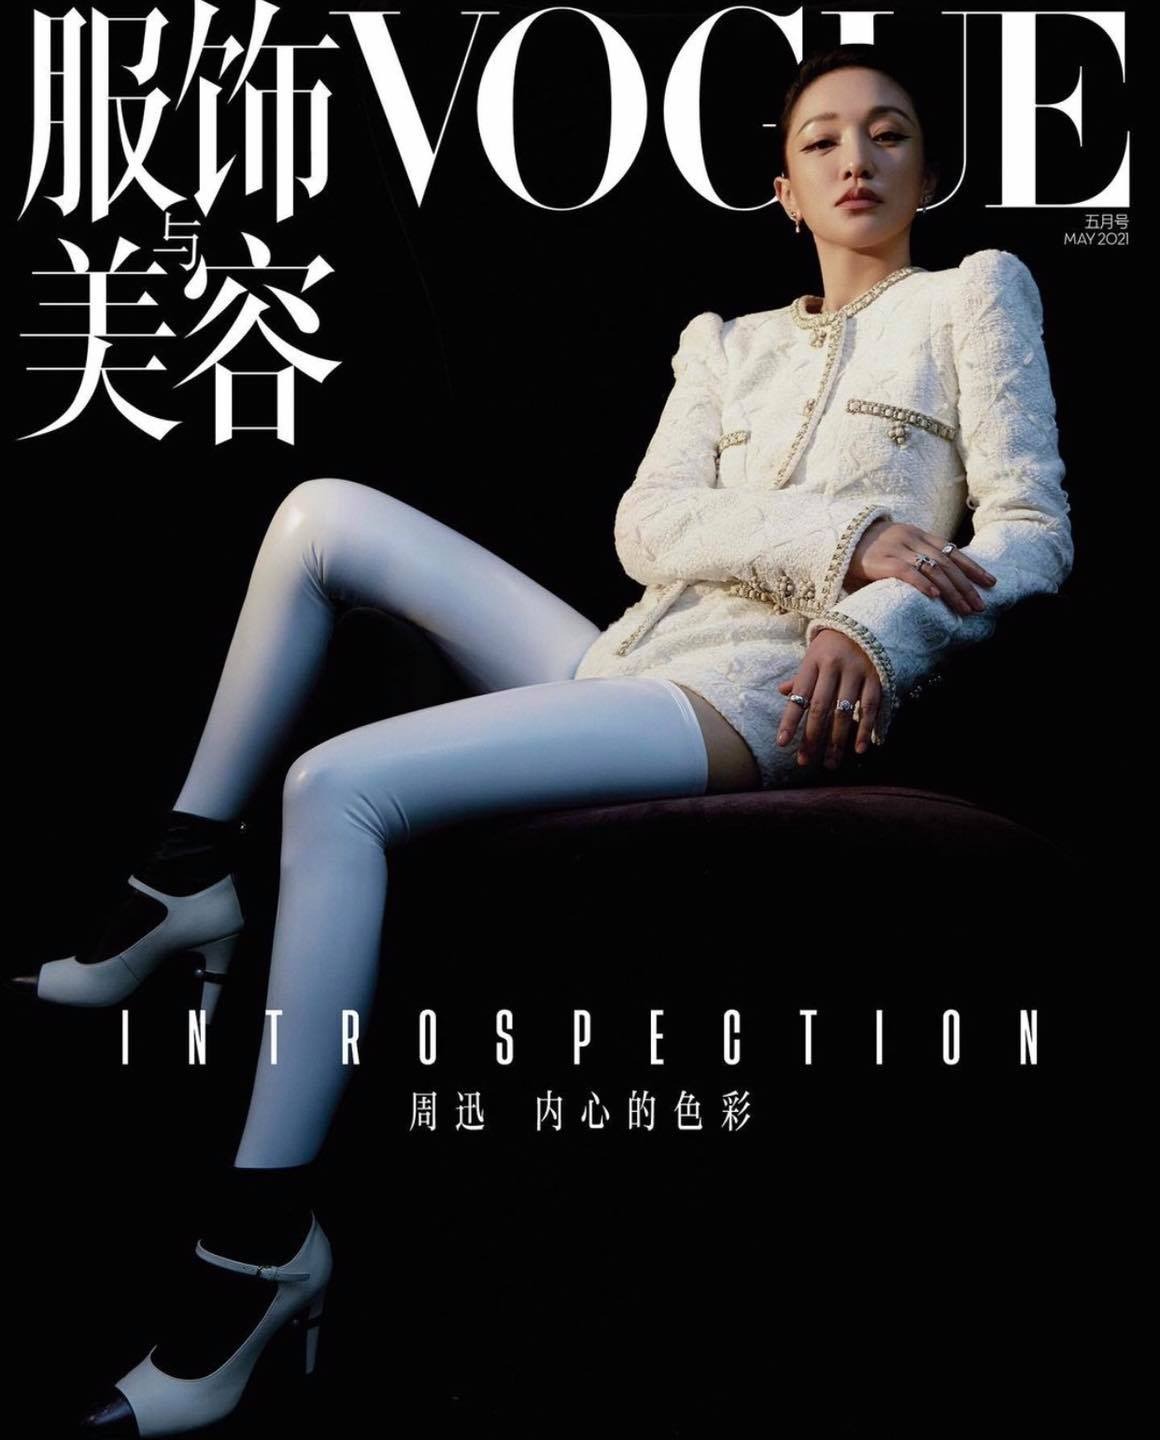 Chanel là thương hiệu đồng hành cùng Châu Tấn trên bìa tạp chí tháng 5